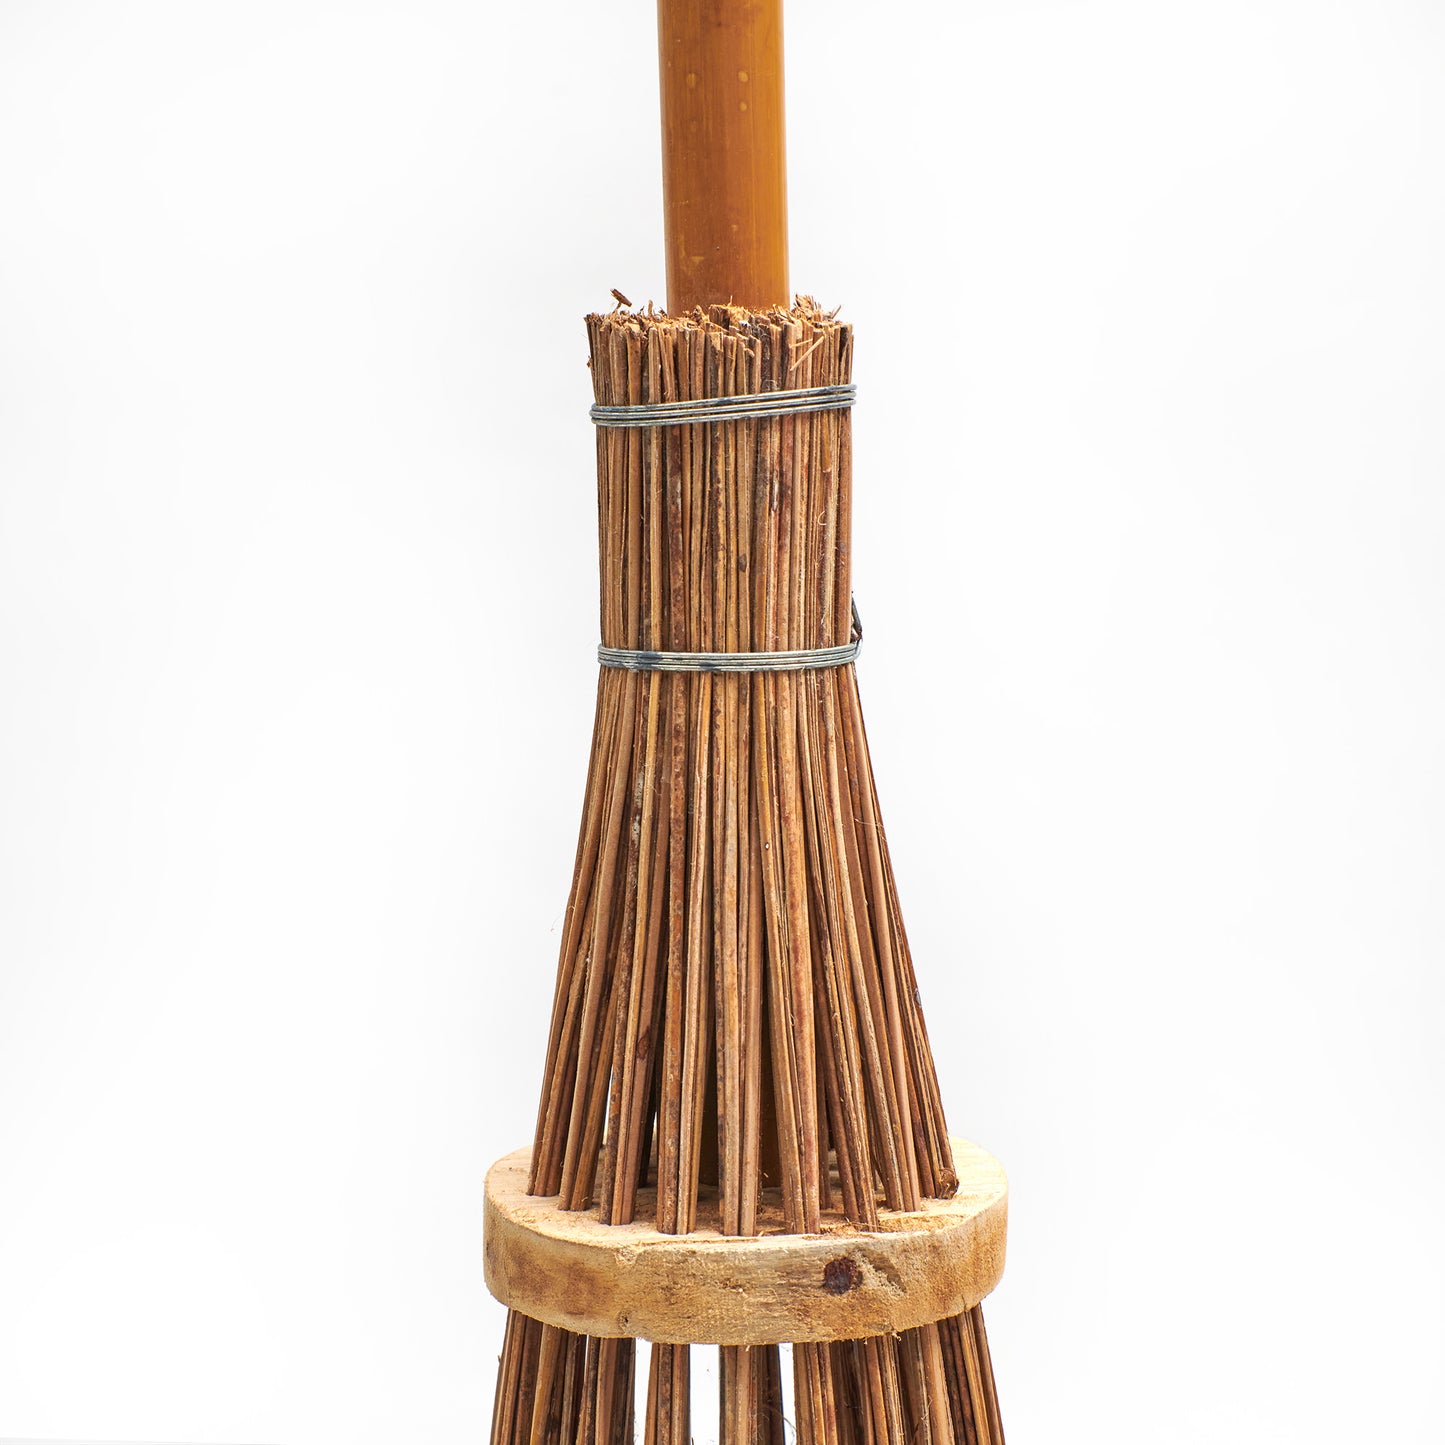 Besen mit Bambusstiel und Bambusreisig - Detailfoto von der Befestigung des Reisigs